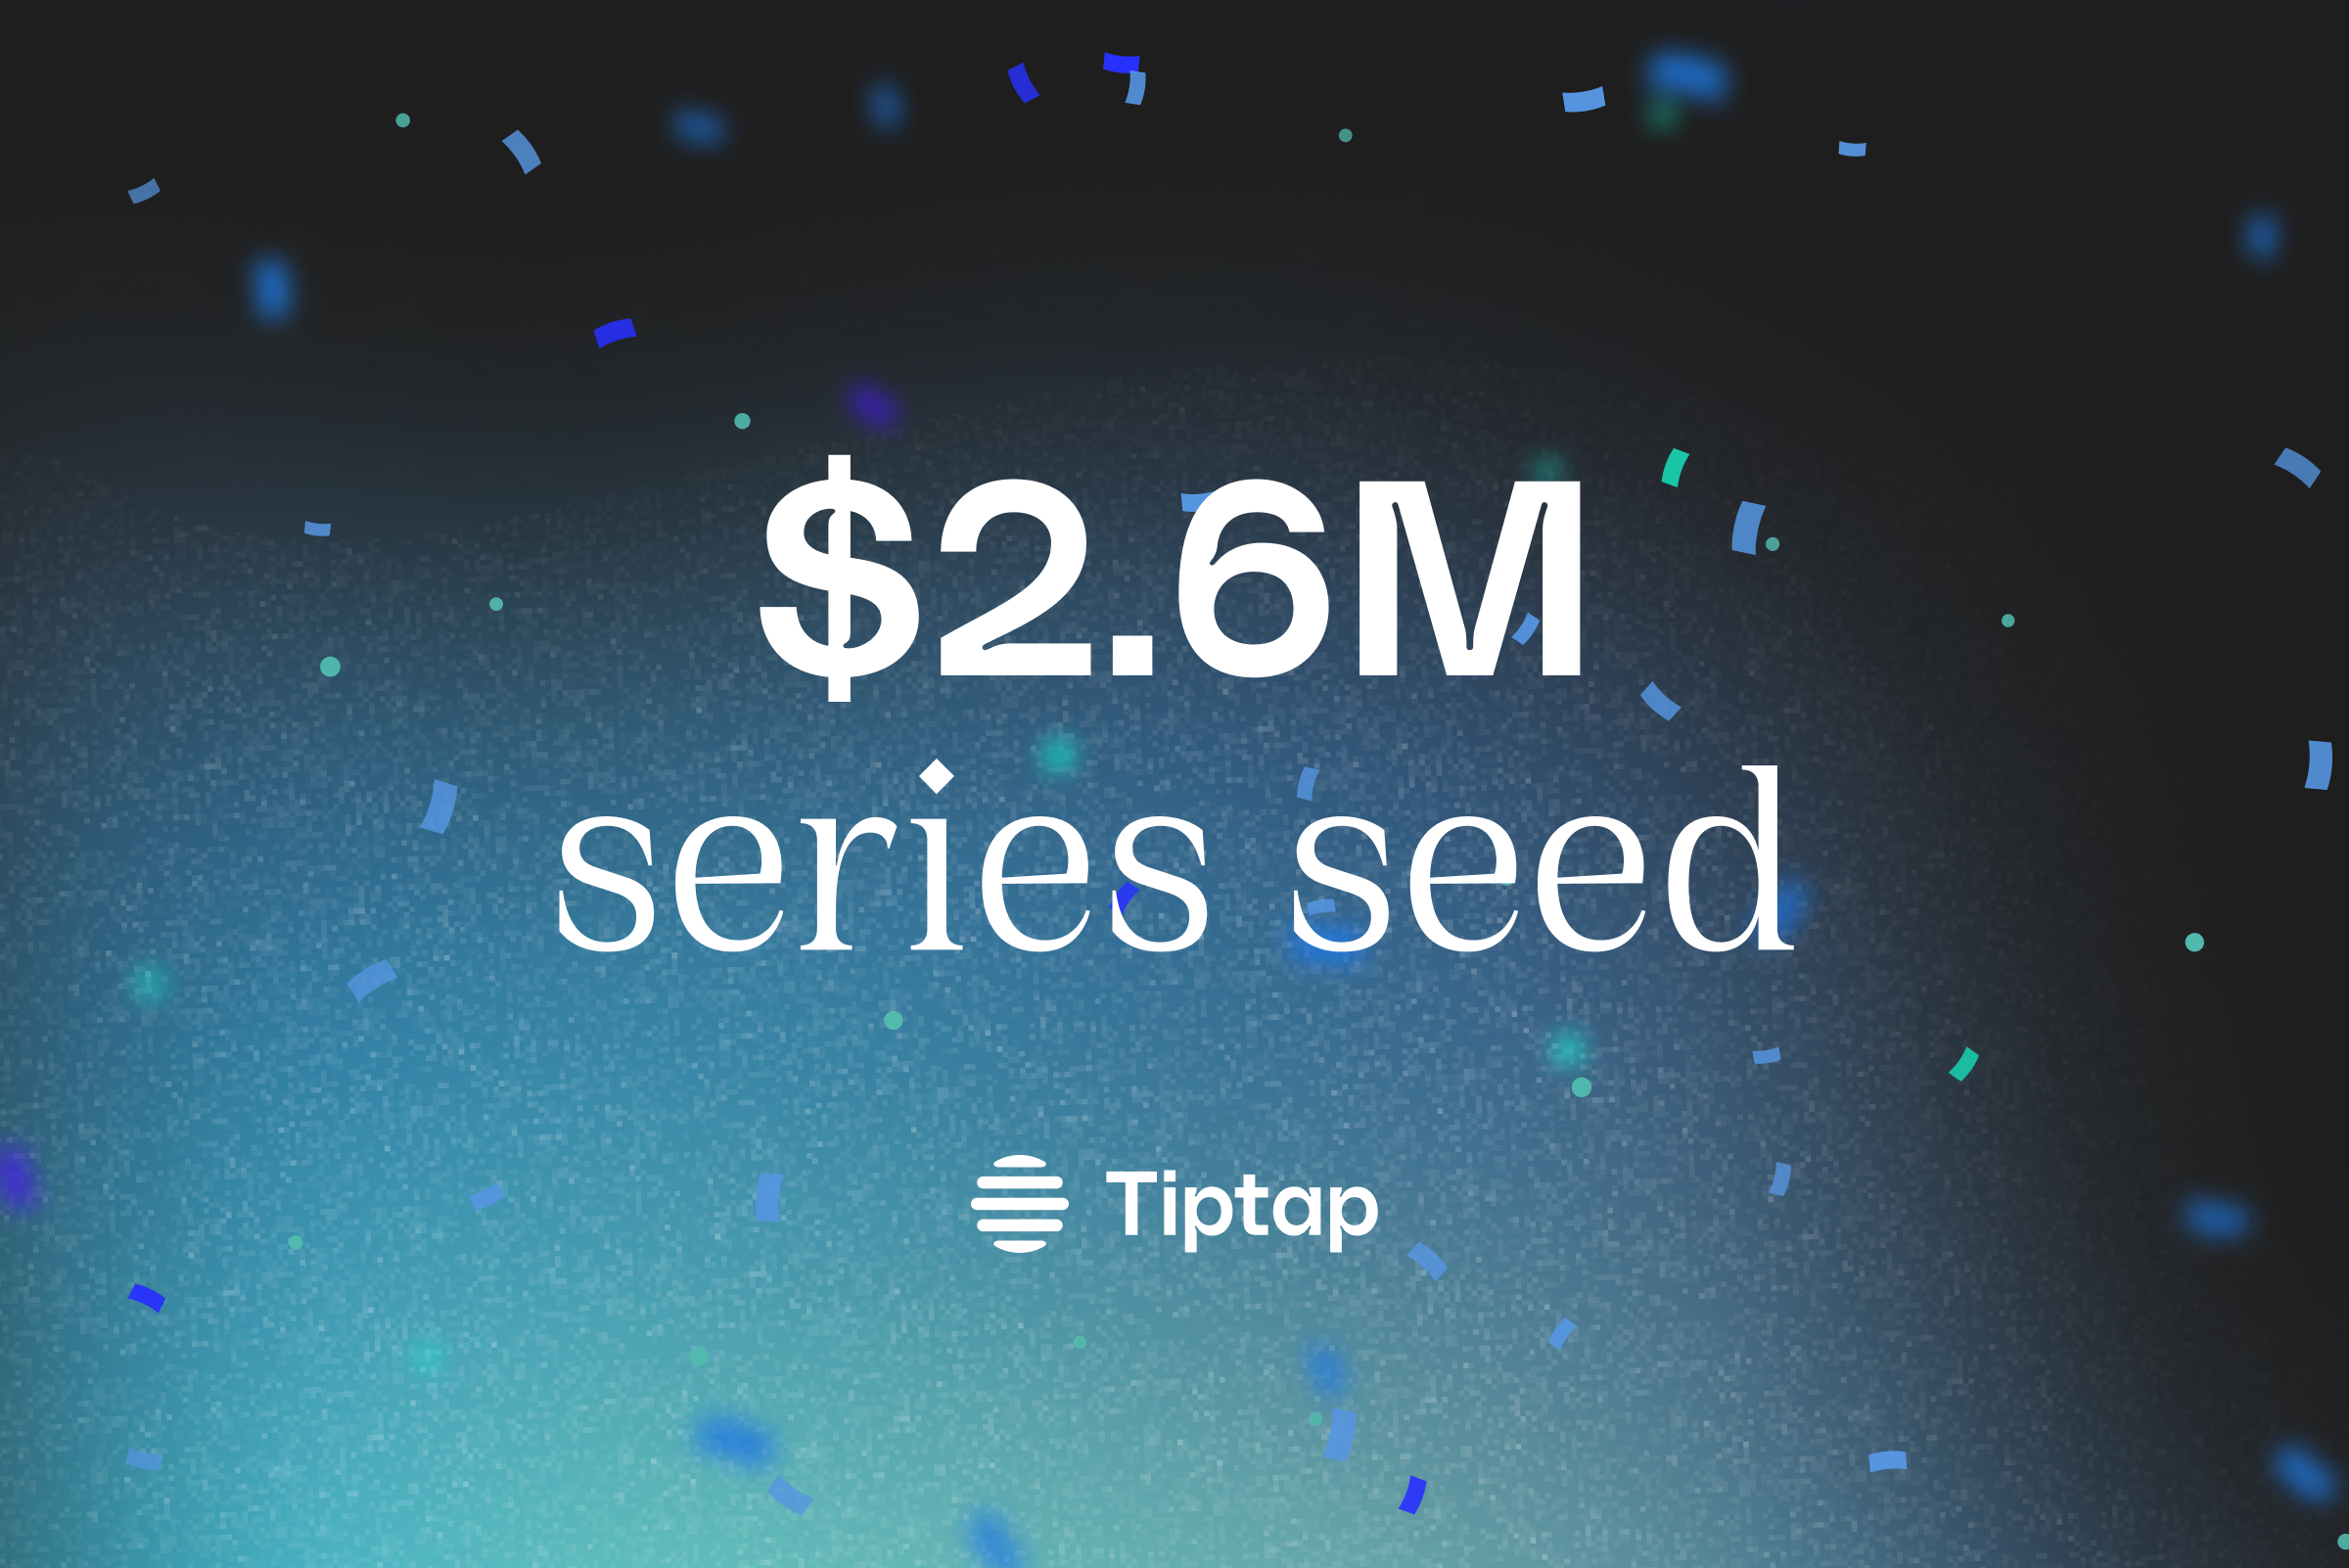 Tiptap Raises $2.6M in Series Seed Funding!